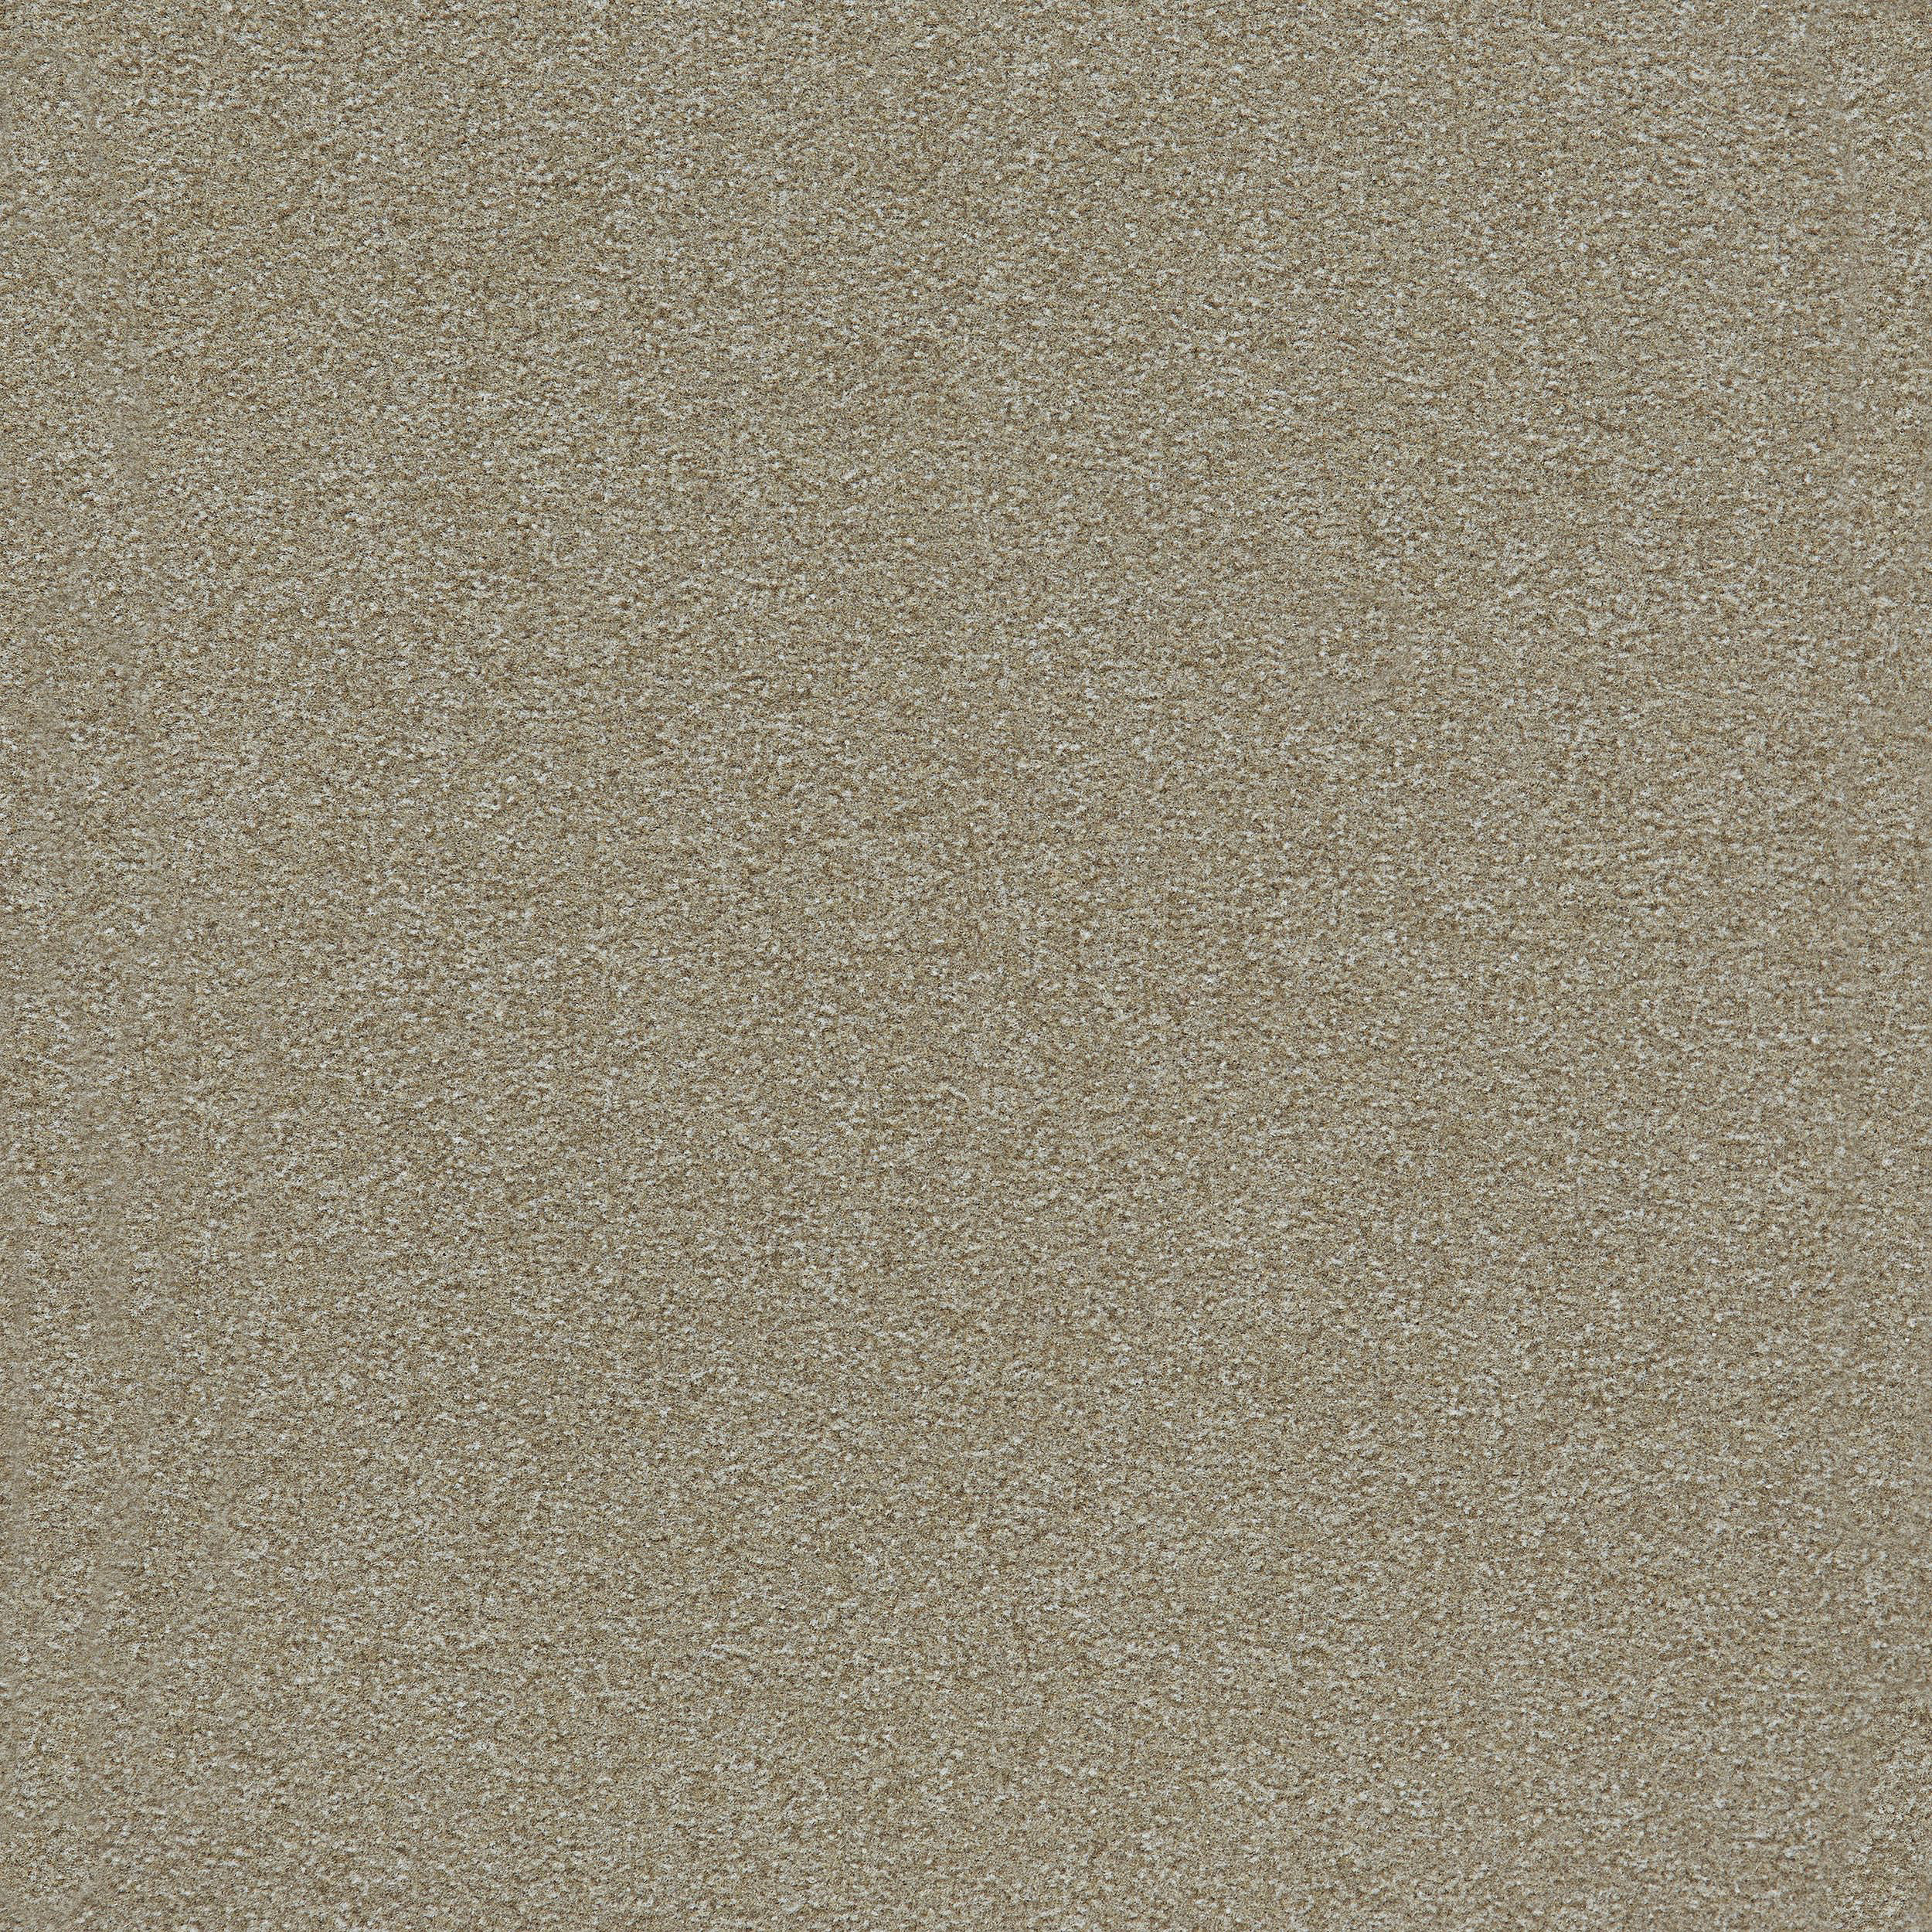 Heuga 725 Carpet Tile In Oyster Bildnummer 11